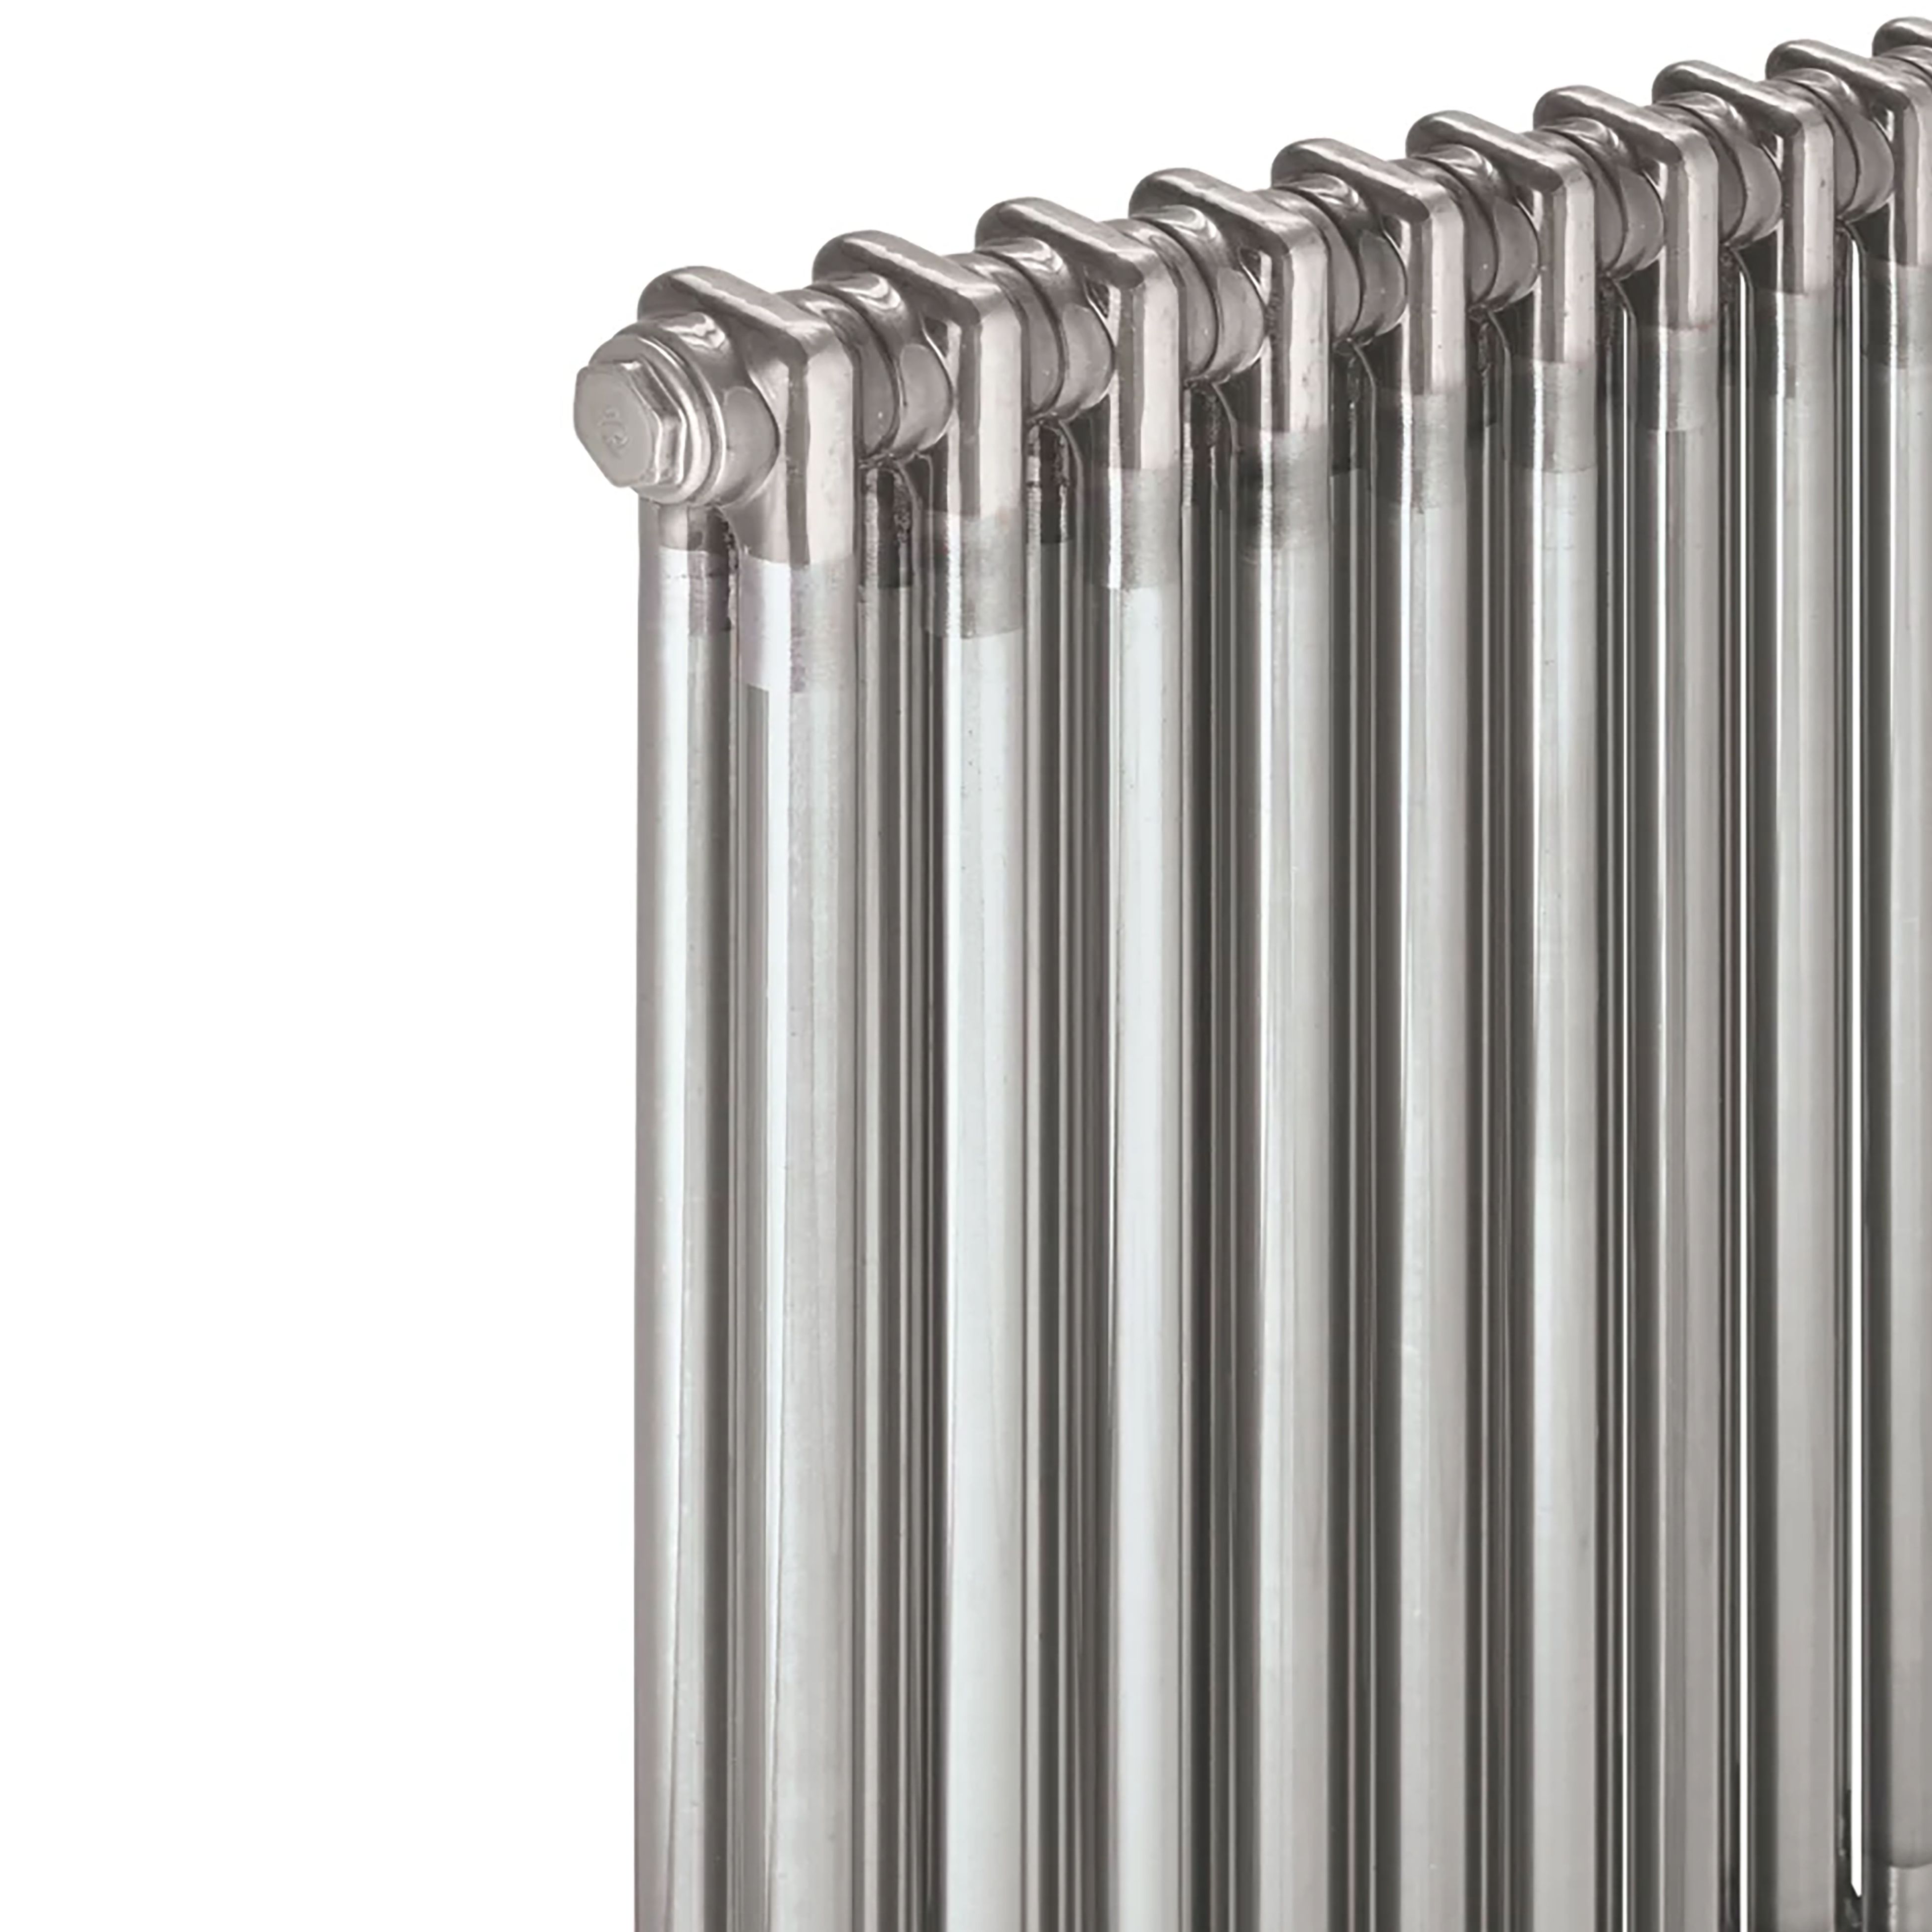 Acova Raw metal 2 Column Radiator, (W)812mm x (H)600mm